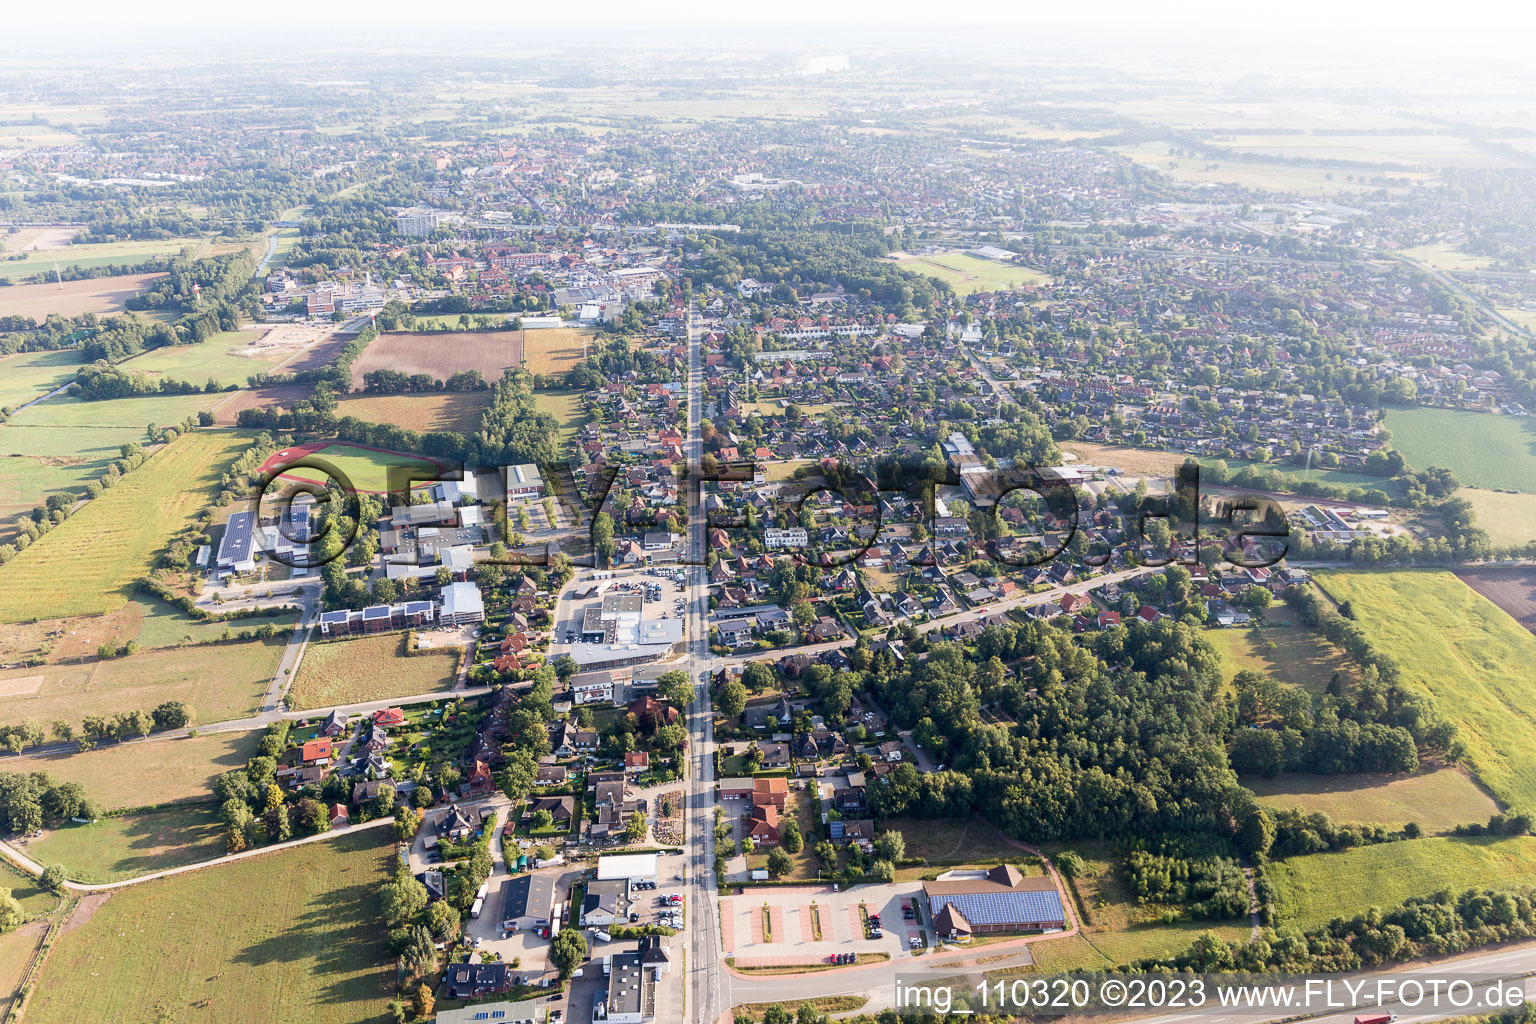 Vue aérienne de Luhdorf dans le département Basse-Saxe, Allemagne